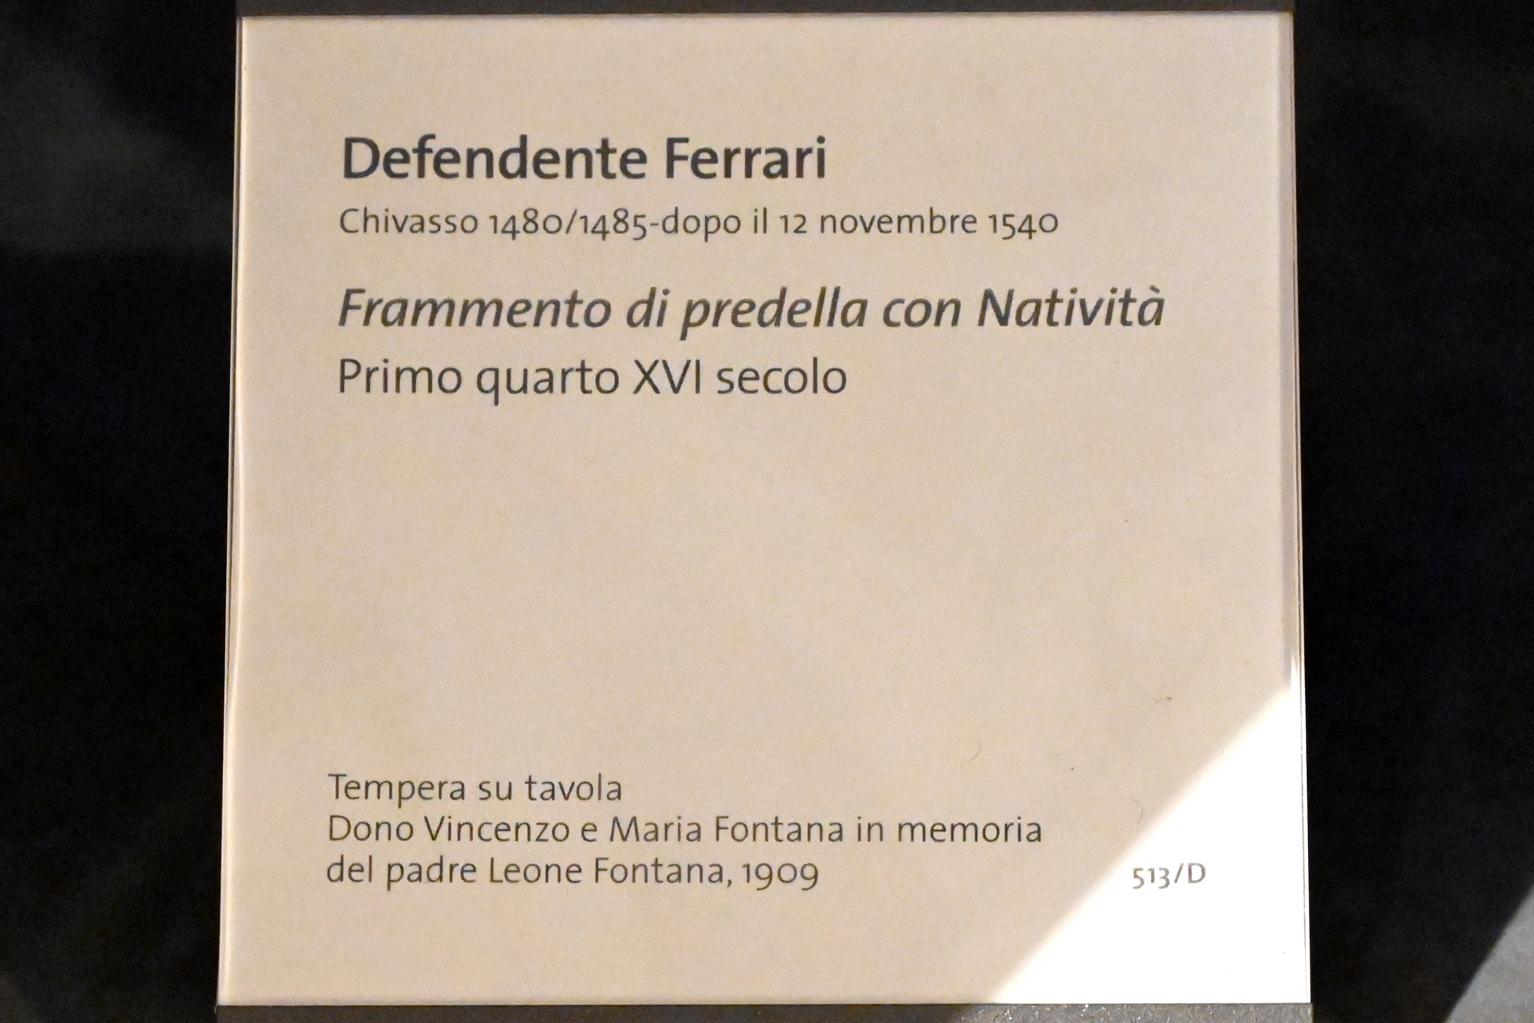 Defendente Ferrari (1504–1532), Fragment einer Predella mit der Anbetung des Kindes, Turin, Museo civico d'arte antica, Saal 5, 1. Viertel 16. Jhd., Bild 2/2